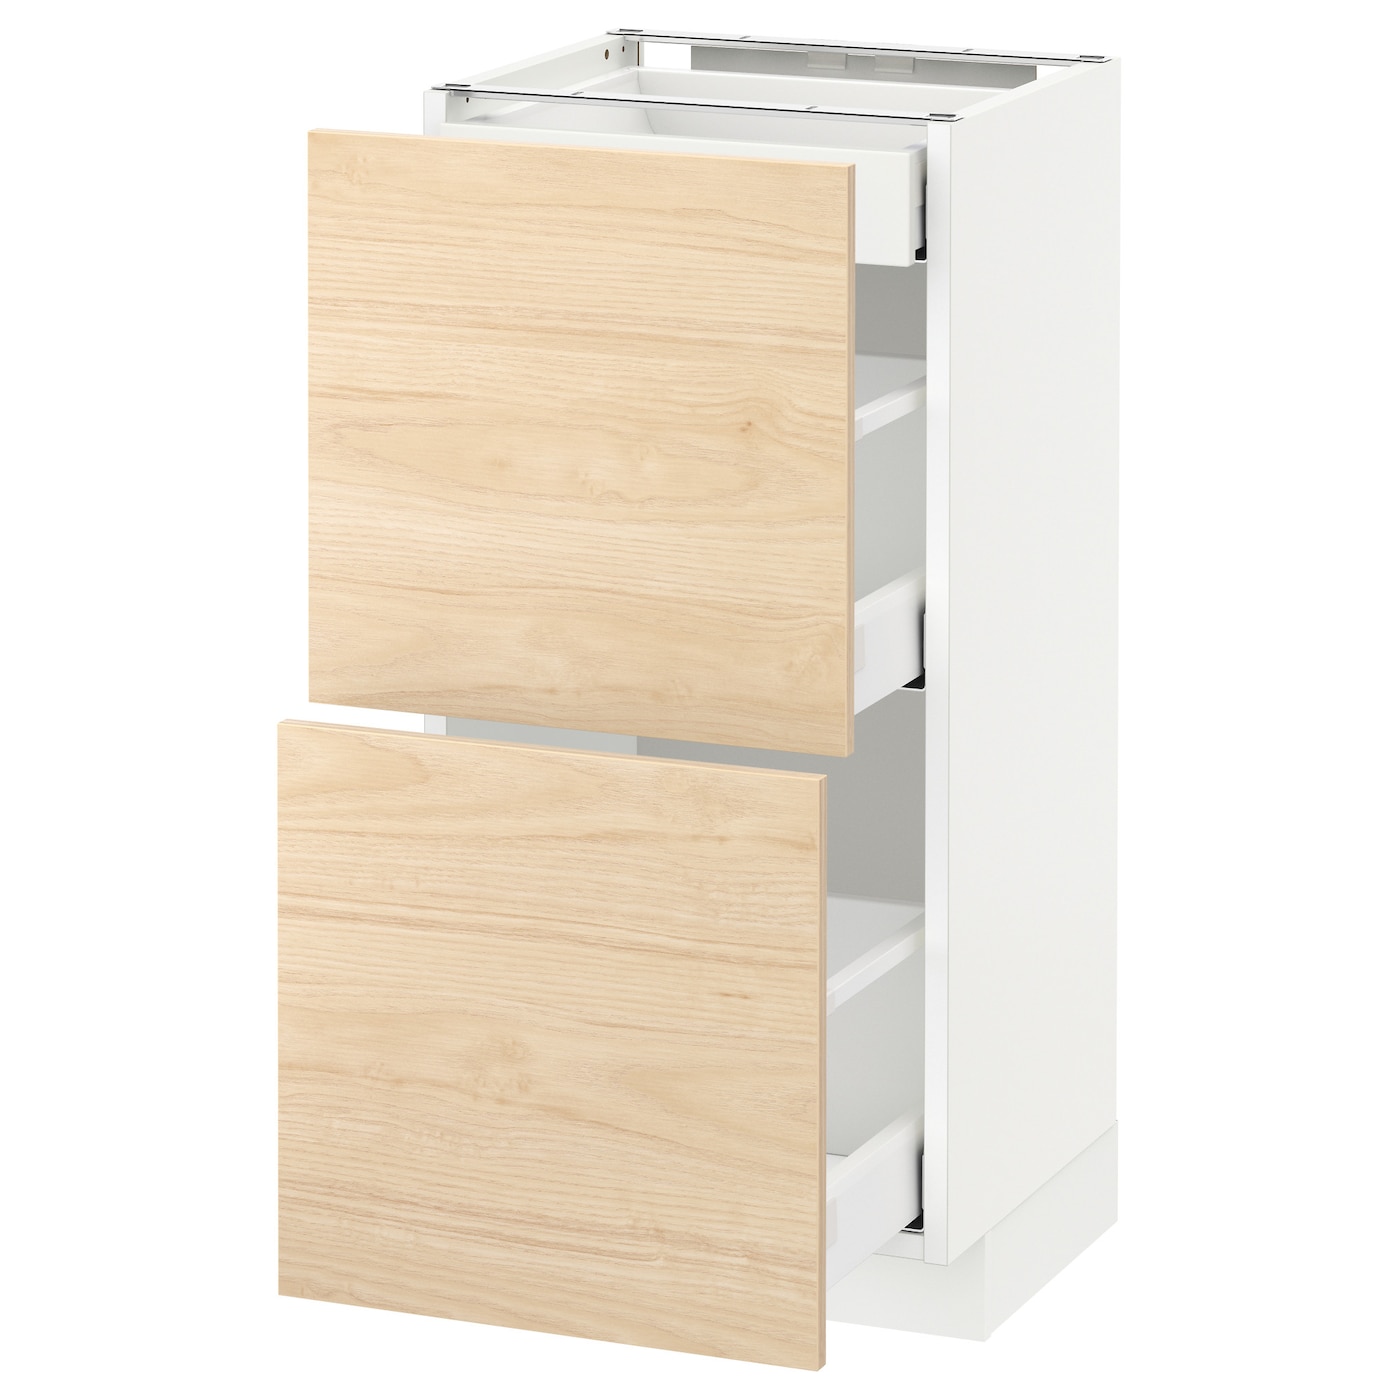 Напольный кухонный шкаф  - IKEA METOD MAXIMERA, 88x39x40см, белый/светлый ясень, МЕТОД МАКСИМЕРА ИКЕА